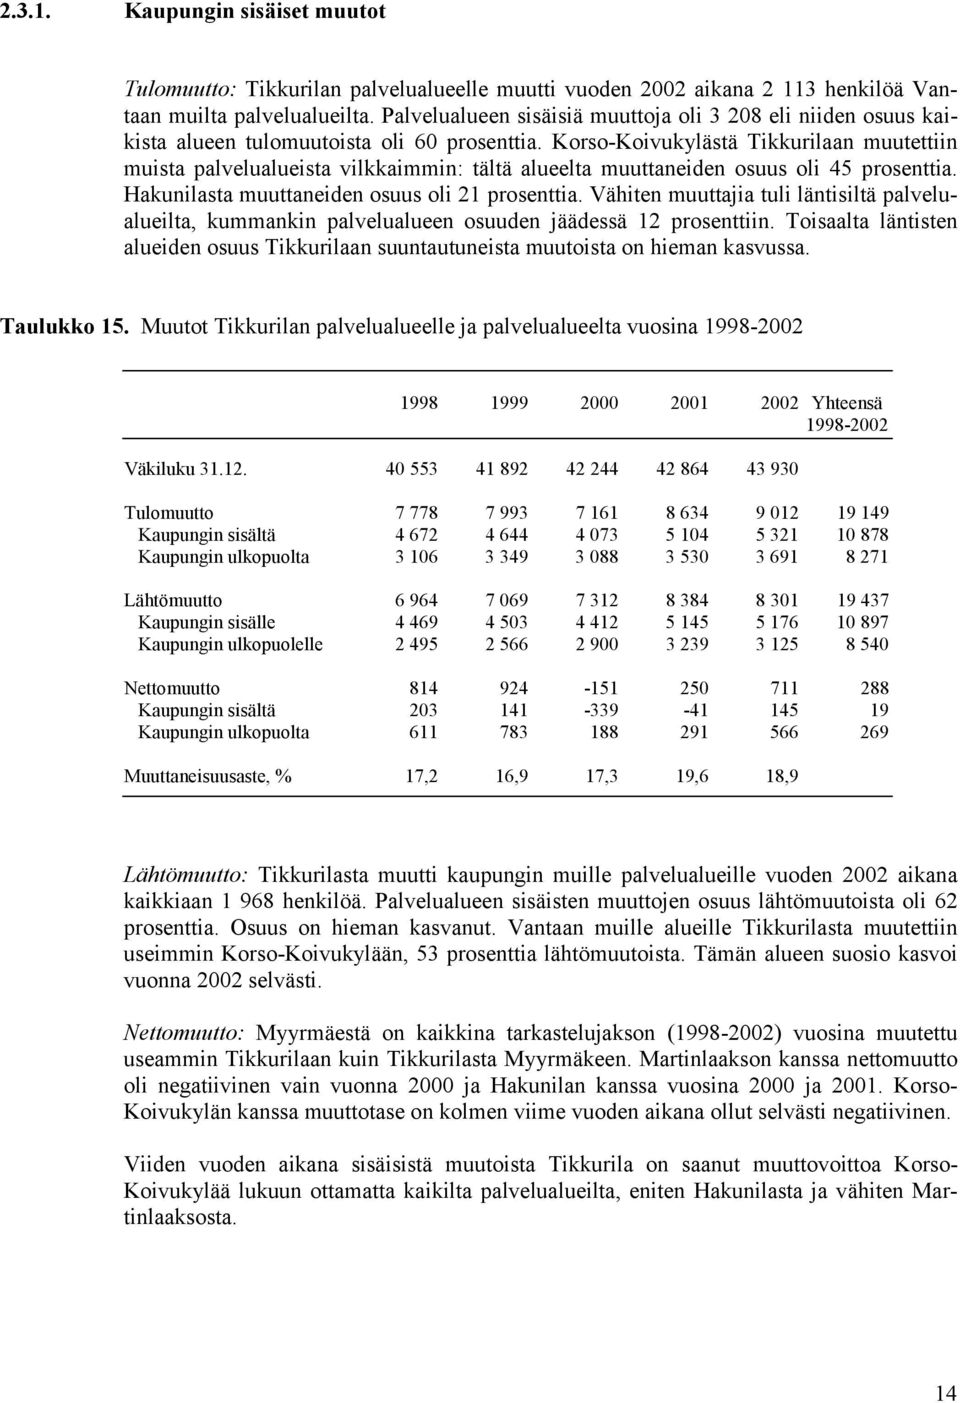 Korso-Koivukylästä Tikkurilaan muutettiin muista palvelualueista vilkkaimmin: tältä alueelta muuttaneiden osuus oli 45 prosenttia. Hakunilasta muuttaneiden osuus oli 21 prosenttia.